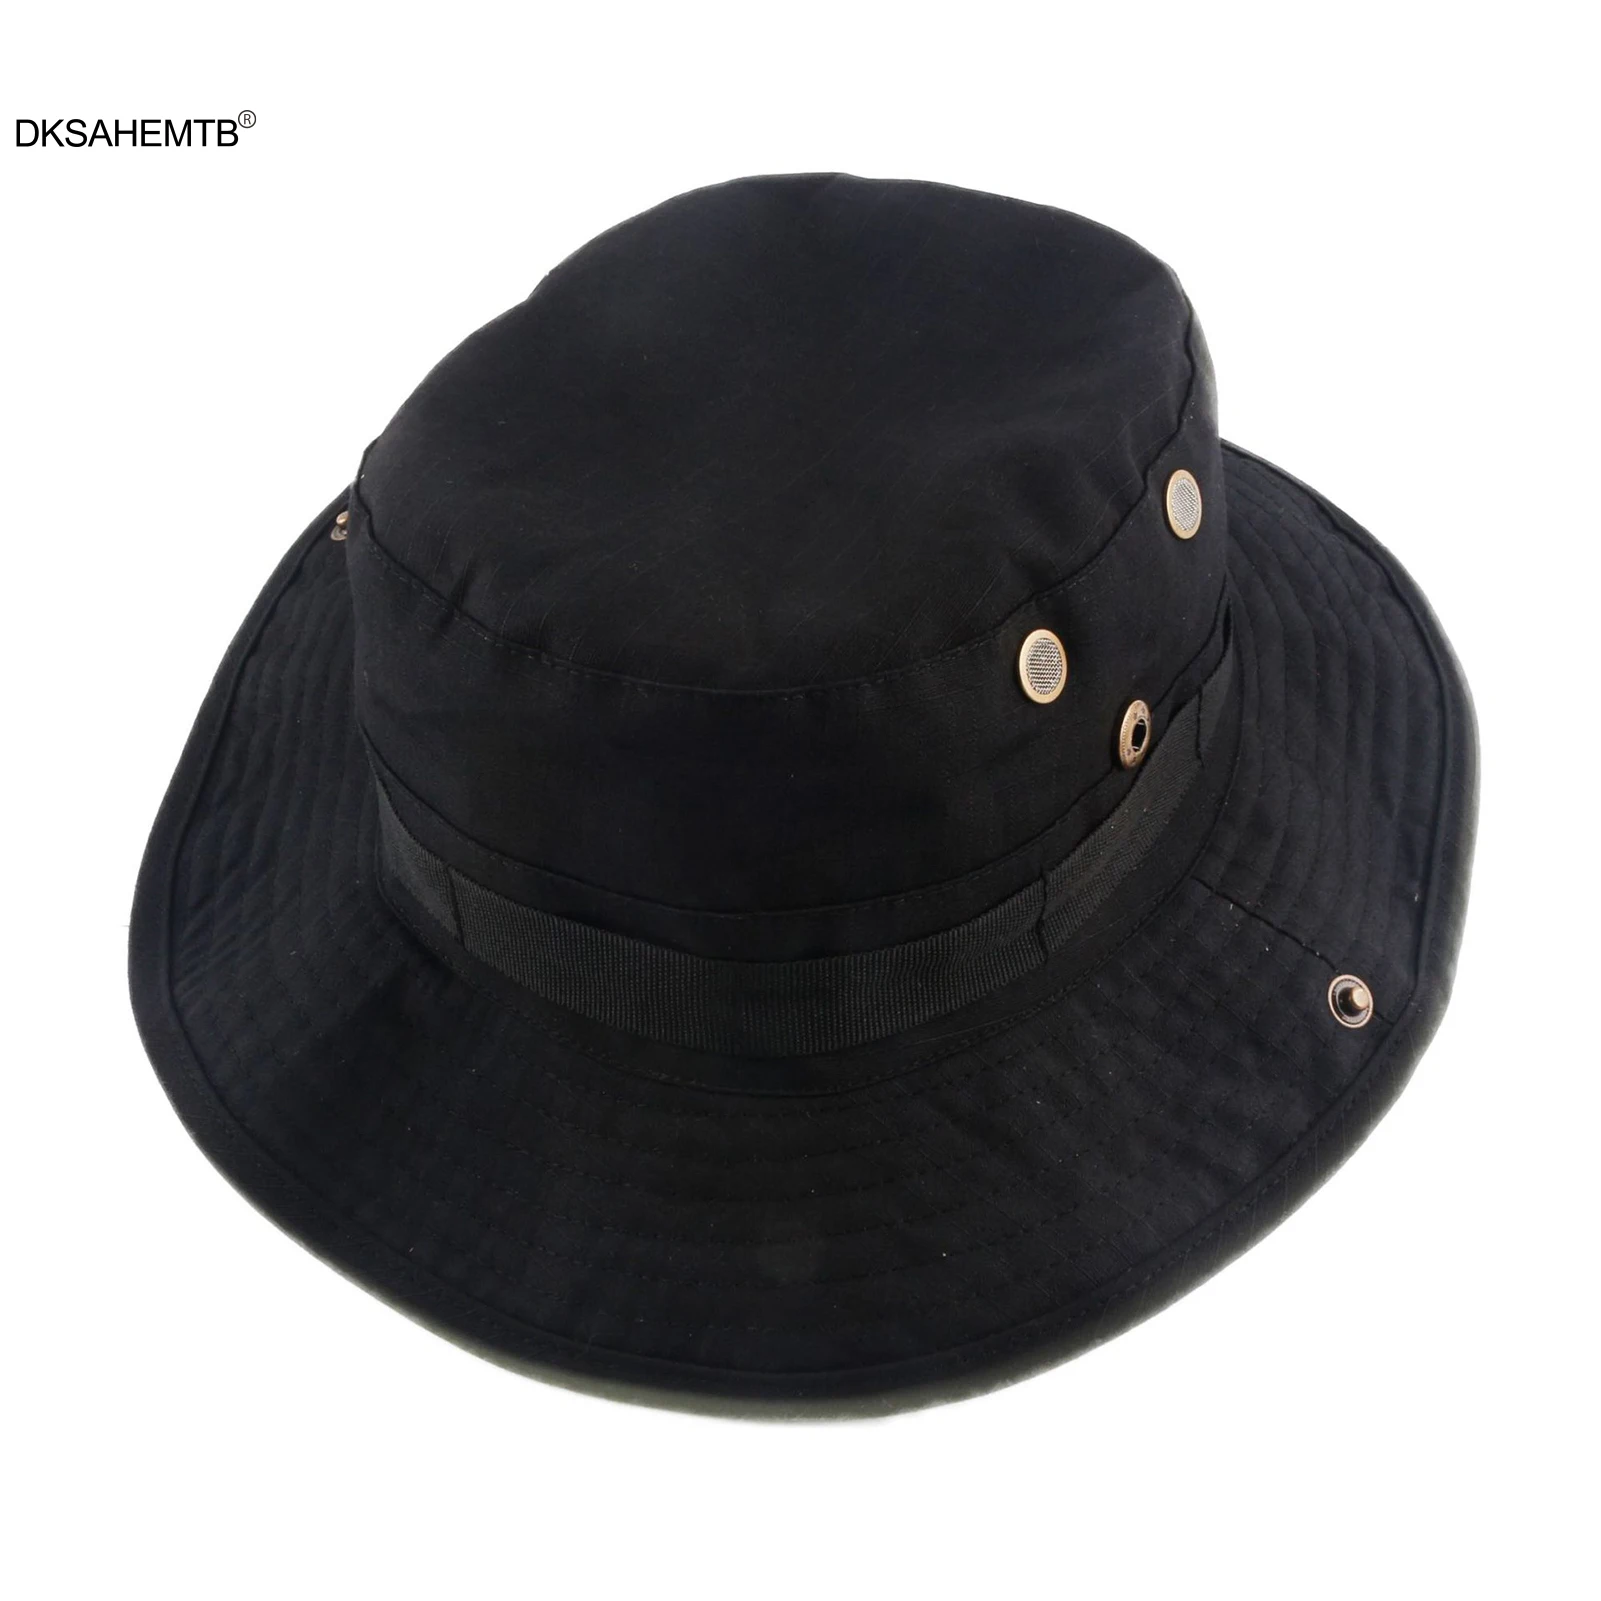 Lauko skrybėlė nuo saulės Žvejys Žvejys Žvejybos kepurė Išplėstas kraštas Žvejybos kepurė Apsauga nuo įbrėžimų Lengva plauti Žvejybos kepurė Užkirsti kelią odos nudegimui